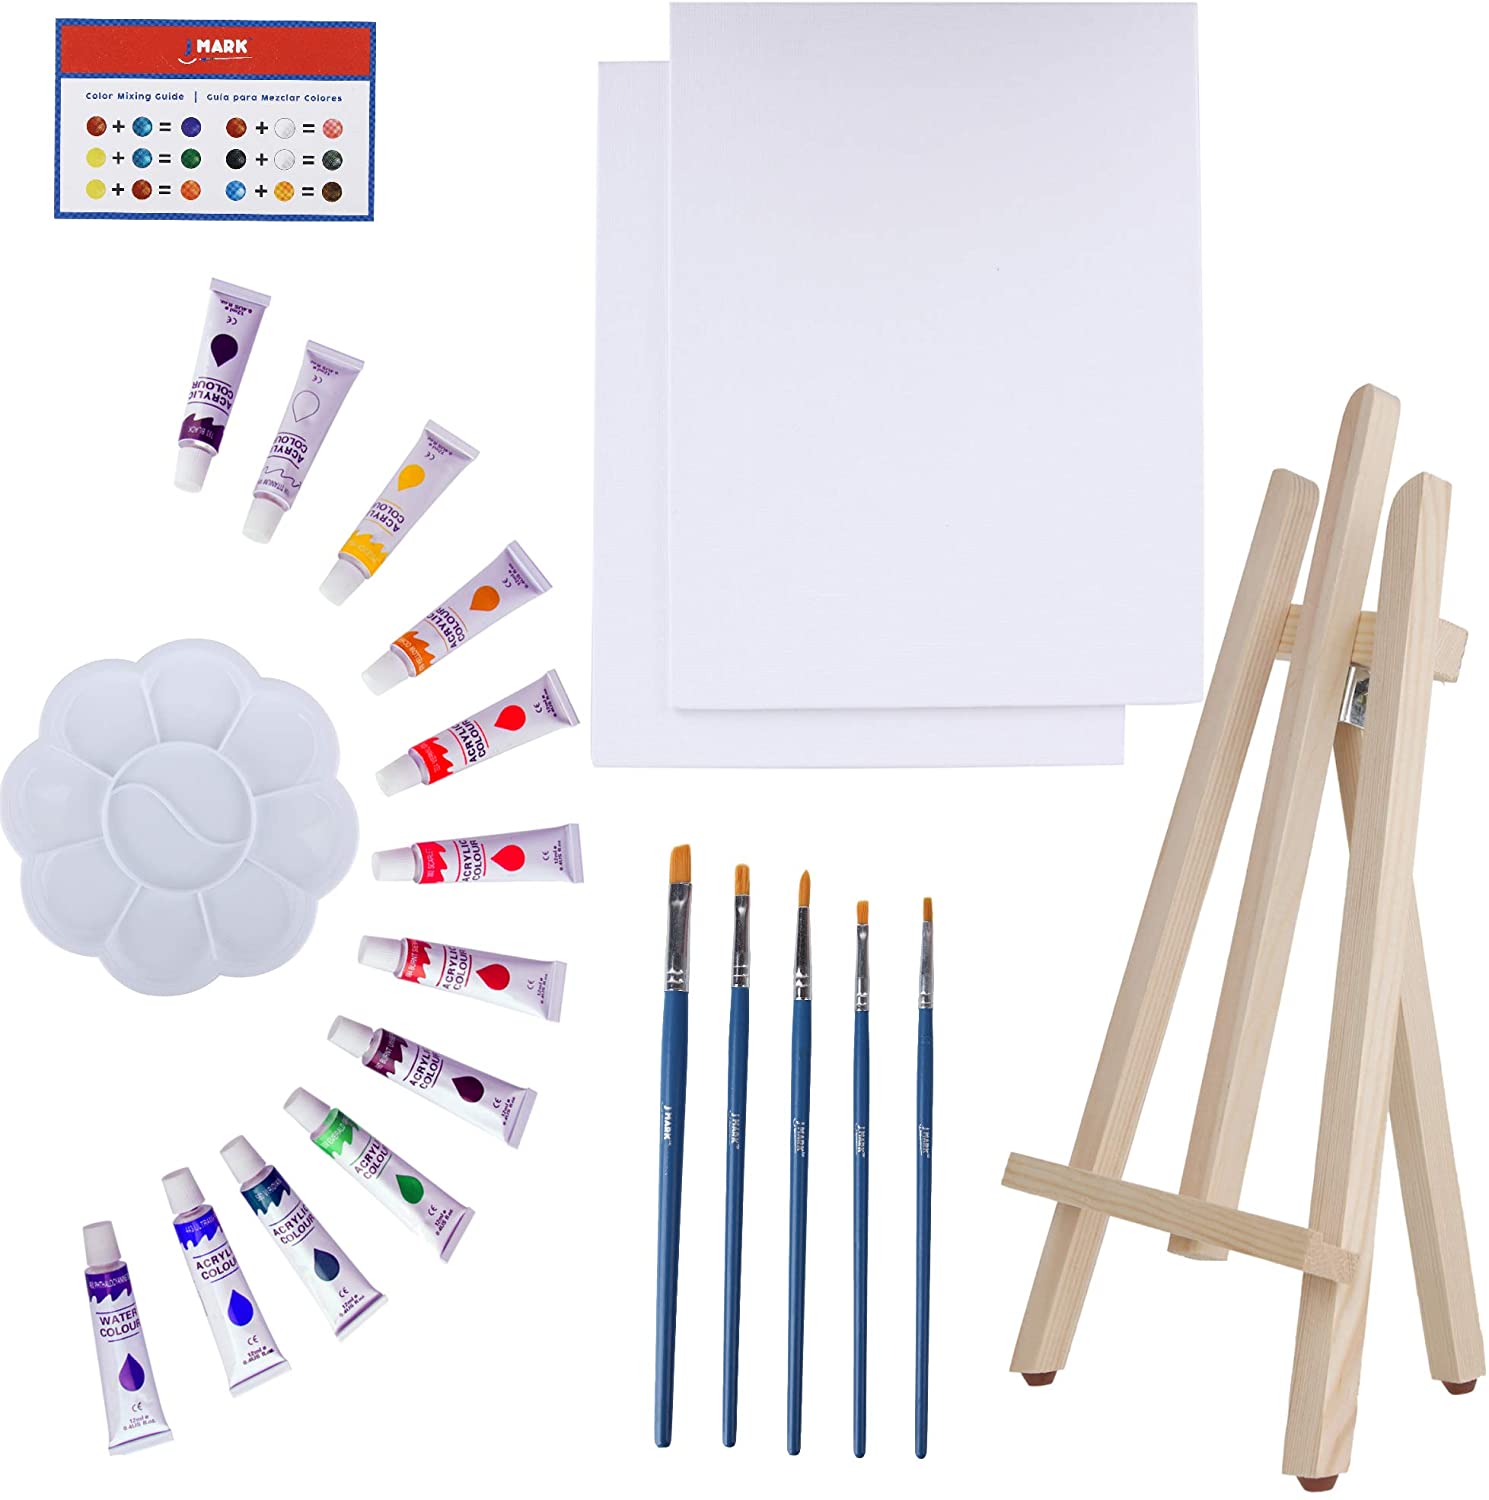 J MARK El kit de pintura incluye juego de pintura acrílica, lienzos de 8 x  10 pulgadas, pinceles, paleta y más